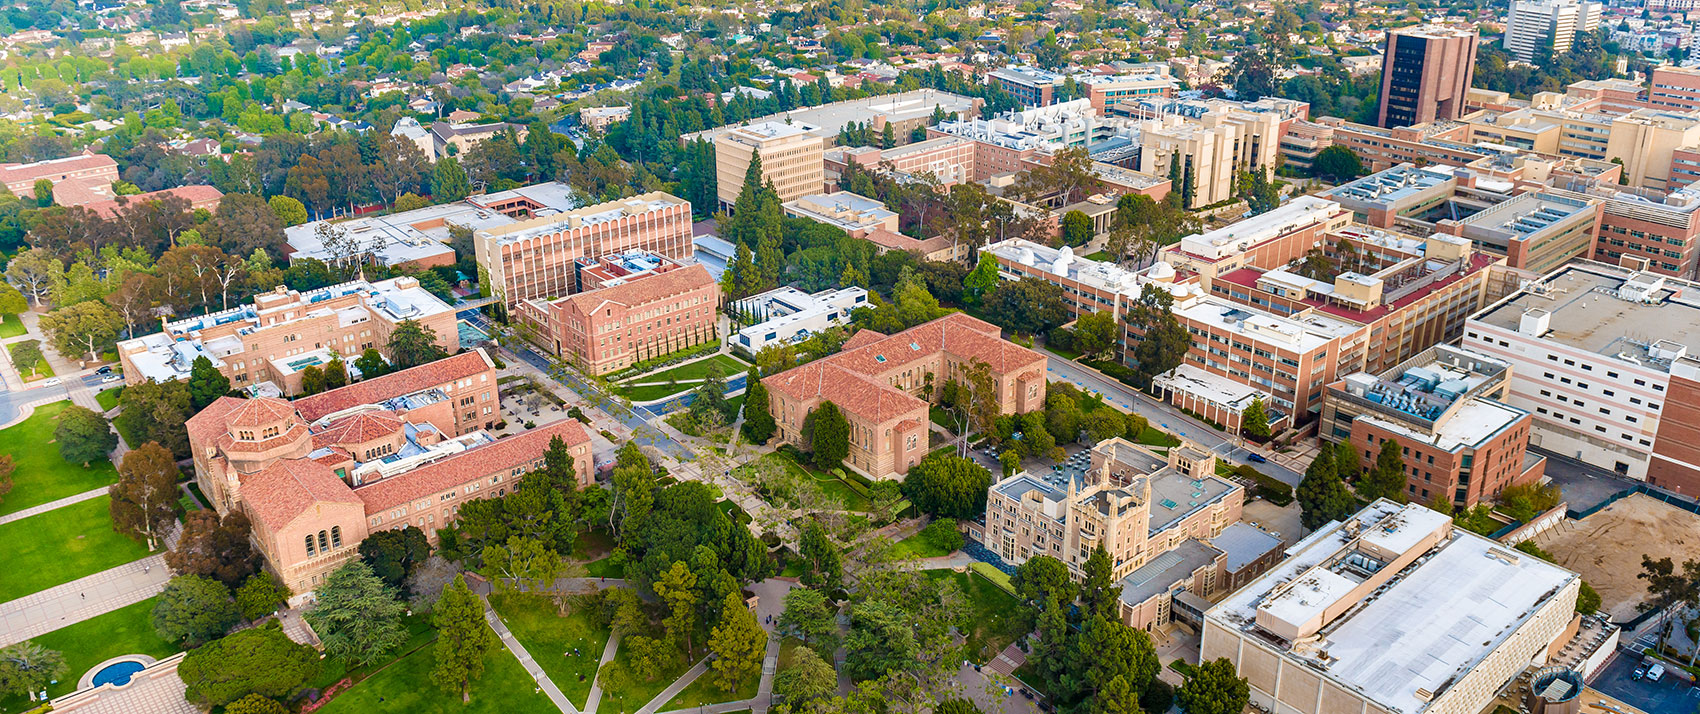 UCLA college campus